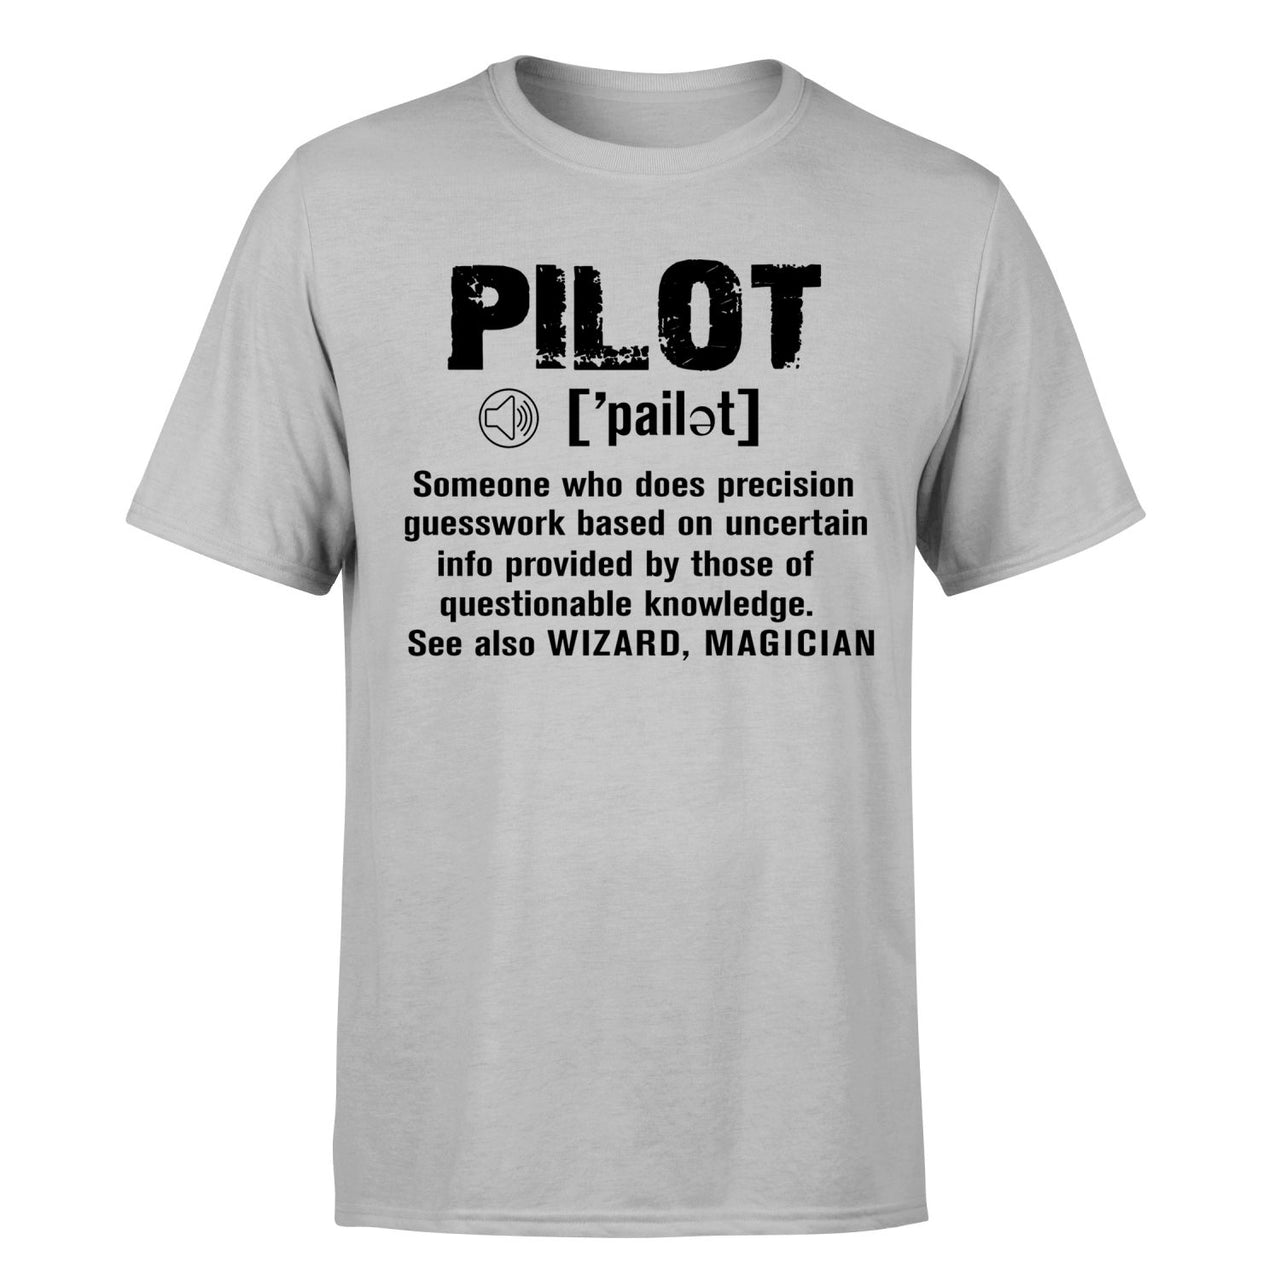 Pilot [Noun] Designed T-Shirts